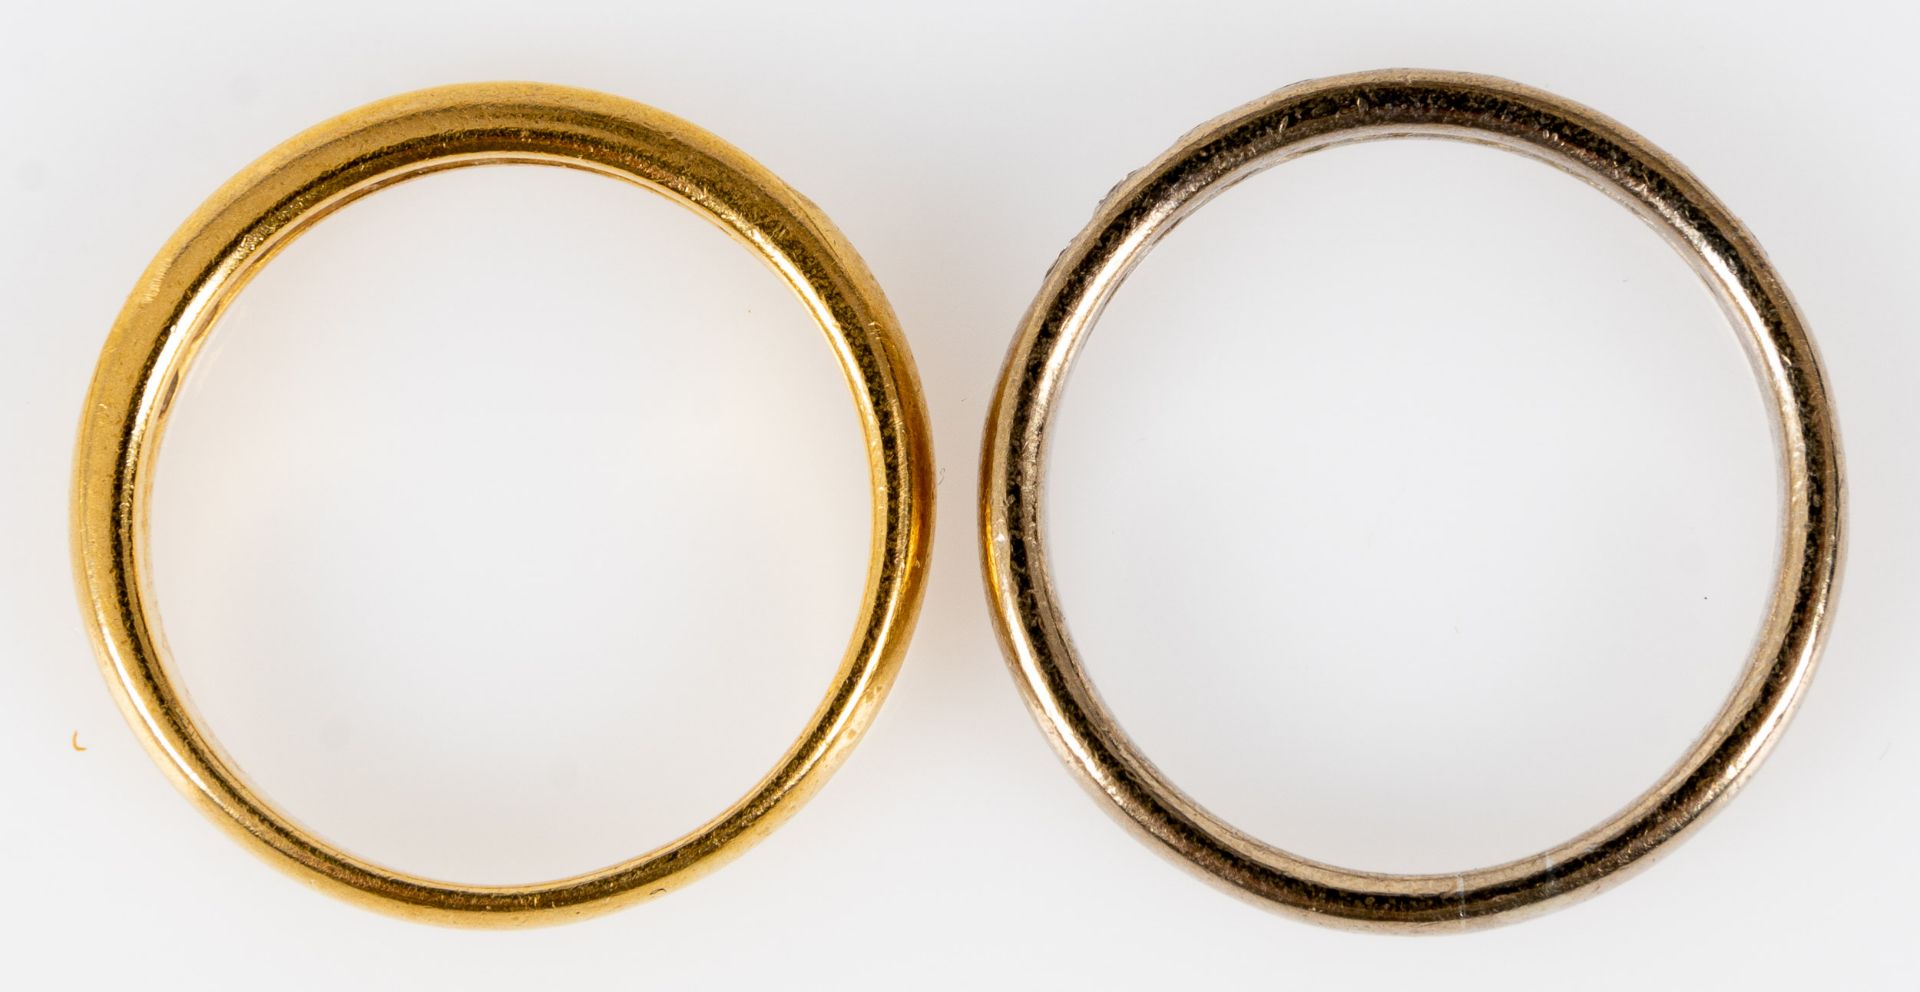 2 identische Beisteckringe, 1x aus 750er Gelbgold, 1x aus 750er Weißgold, sogen. "Halb - Memory" - - Image 4 of 7